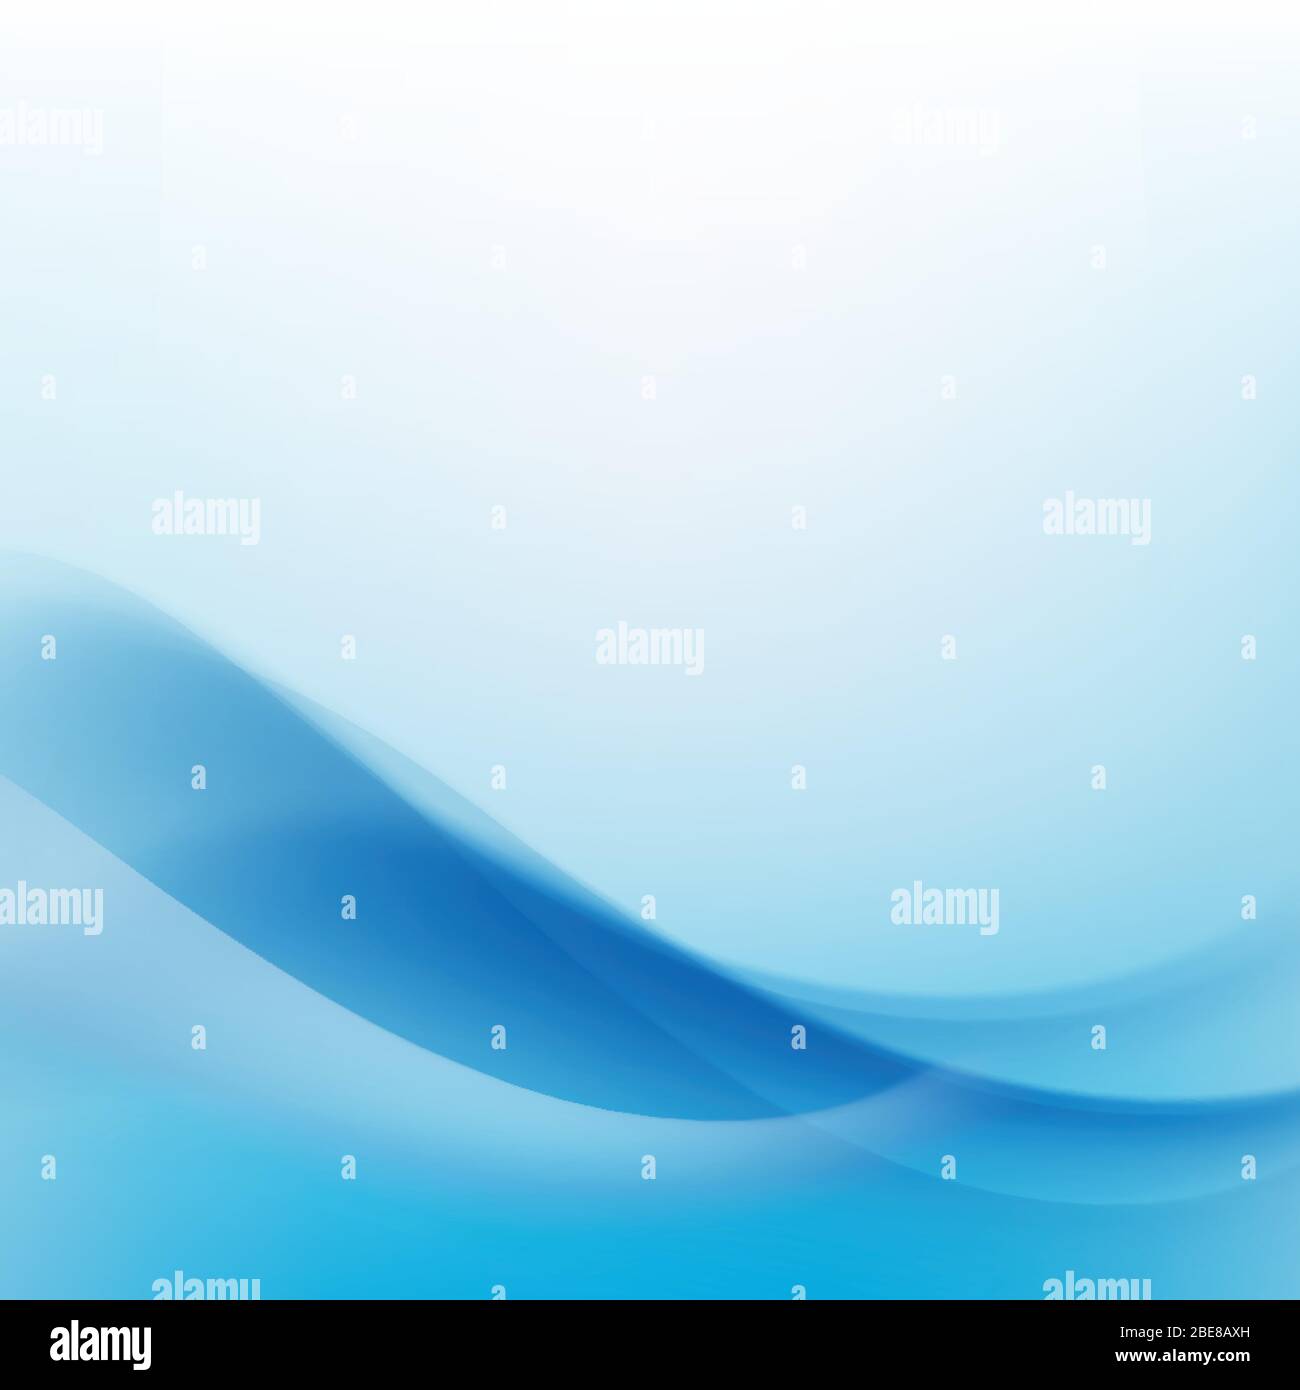 Abstrakter Hintergrund Helle blaue Kurve und Wellenelement Vektor-Illustration Stock Vektor